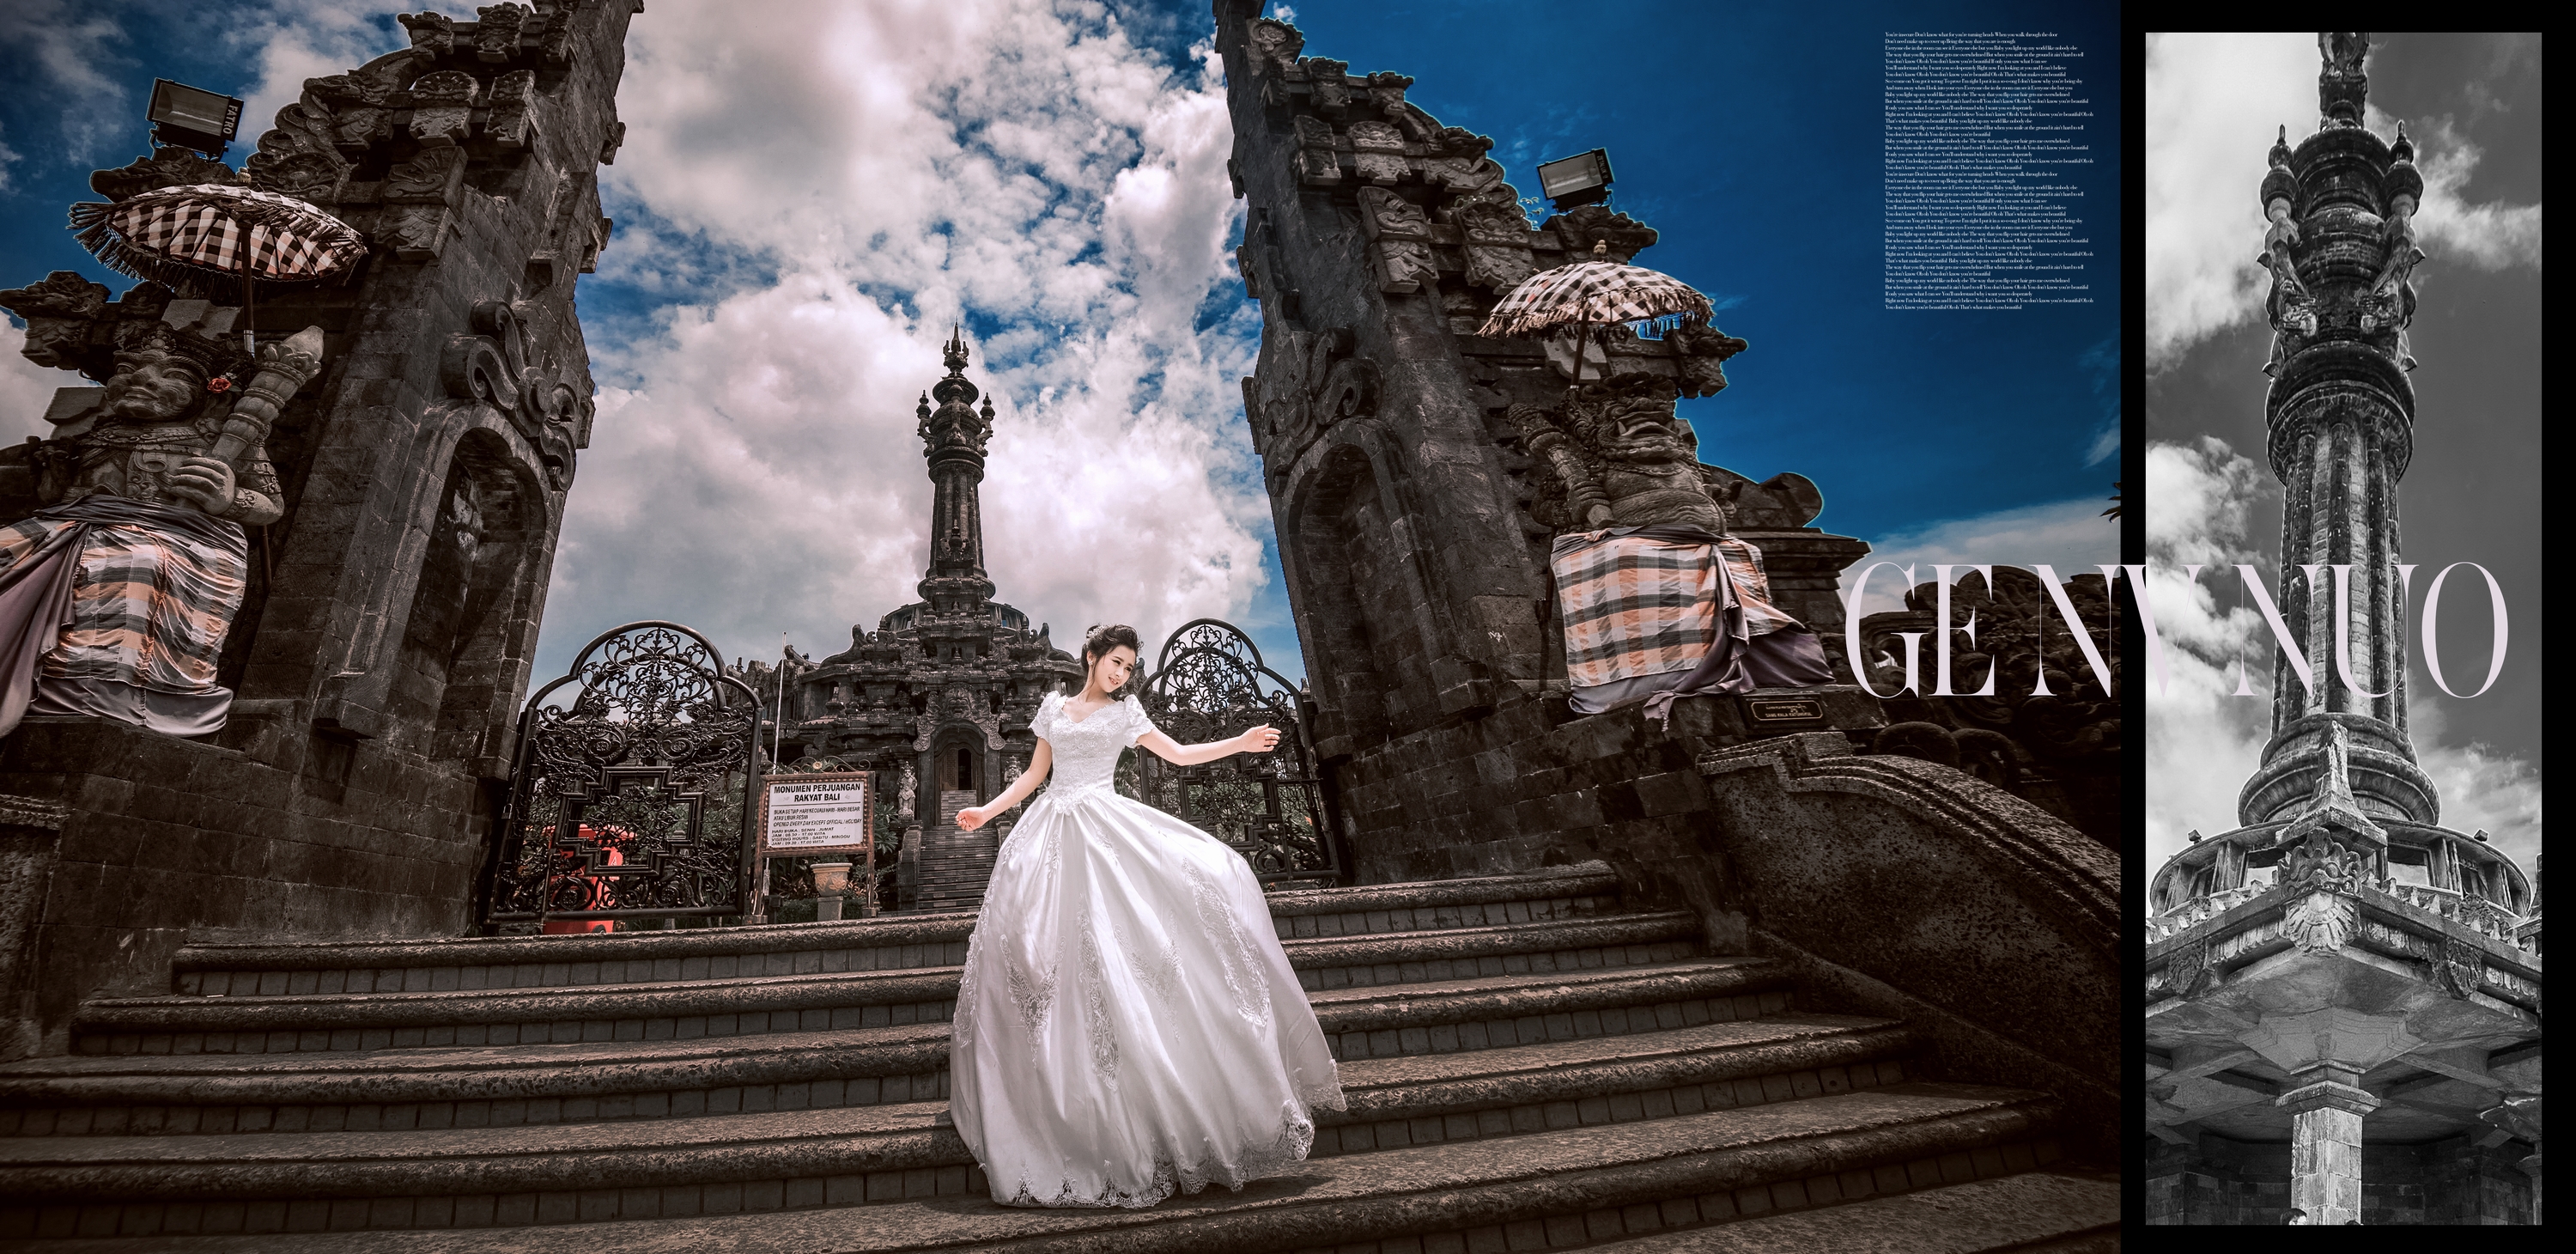 [巴厘岛婚纱旅拍]格鲁诺宫殿